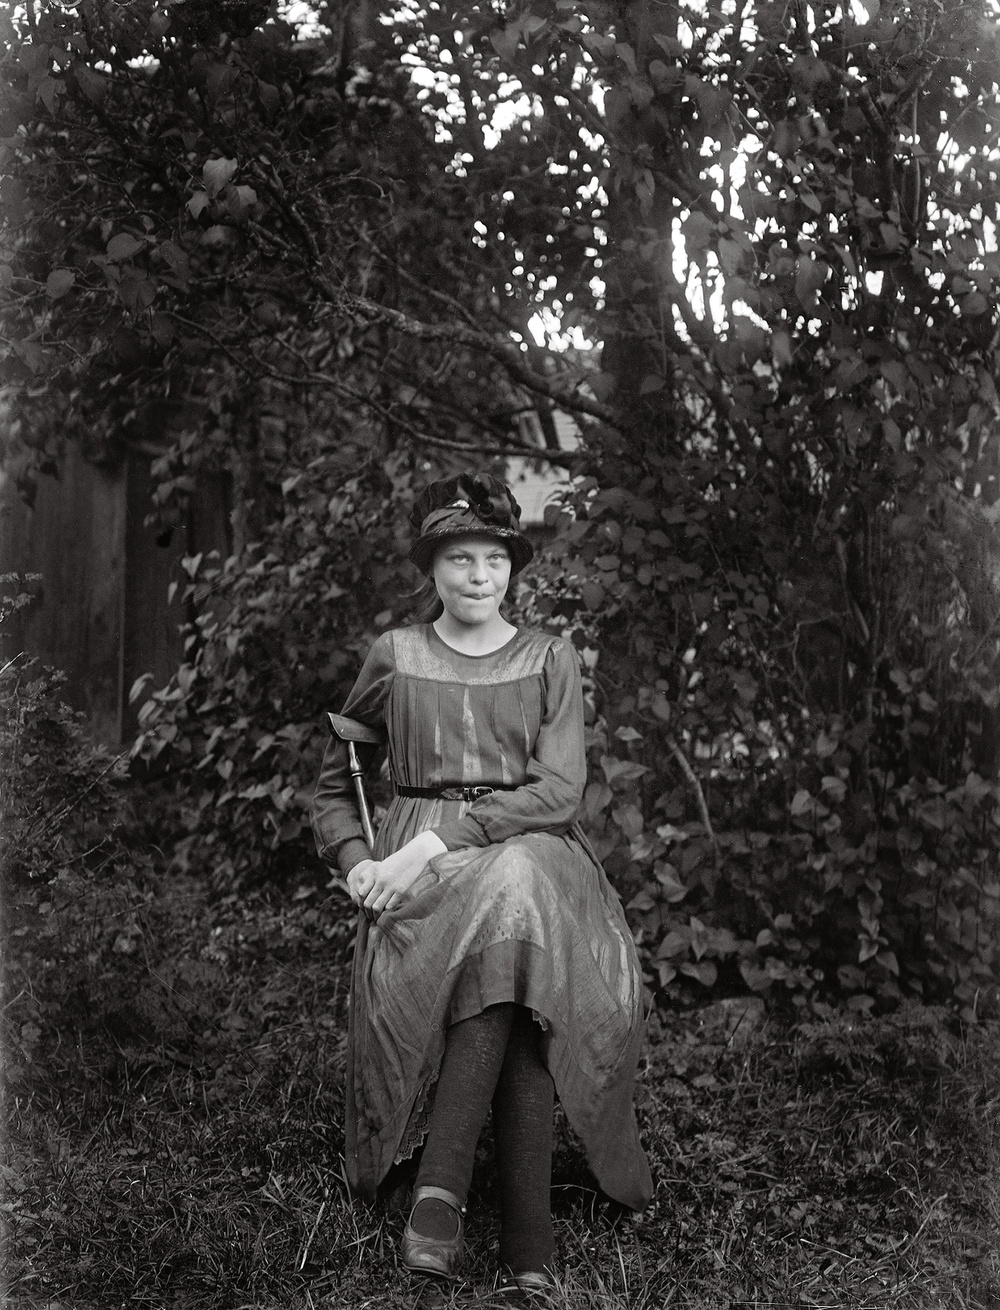 "Elni Säv sittande ensam 1 litet tunnt." 
1920, Sävasta, Altuna socken
Foto: John Alinder/ ©Upplandsmuseet